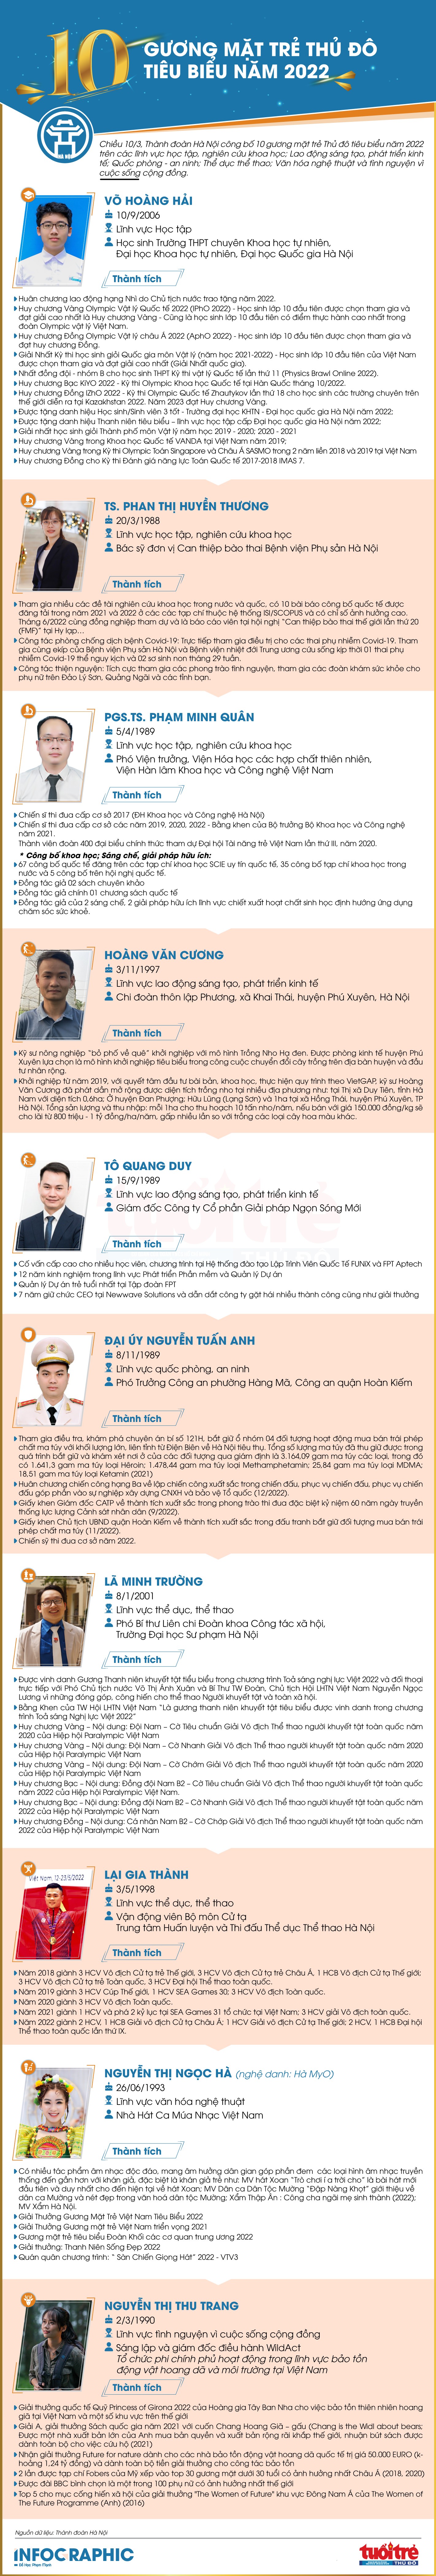 [Infographic] 10 Gương mặt trẻ Thủ đô tiêu biểu năm 2022